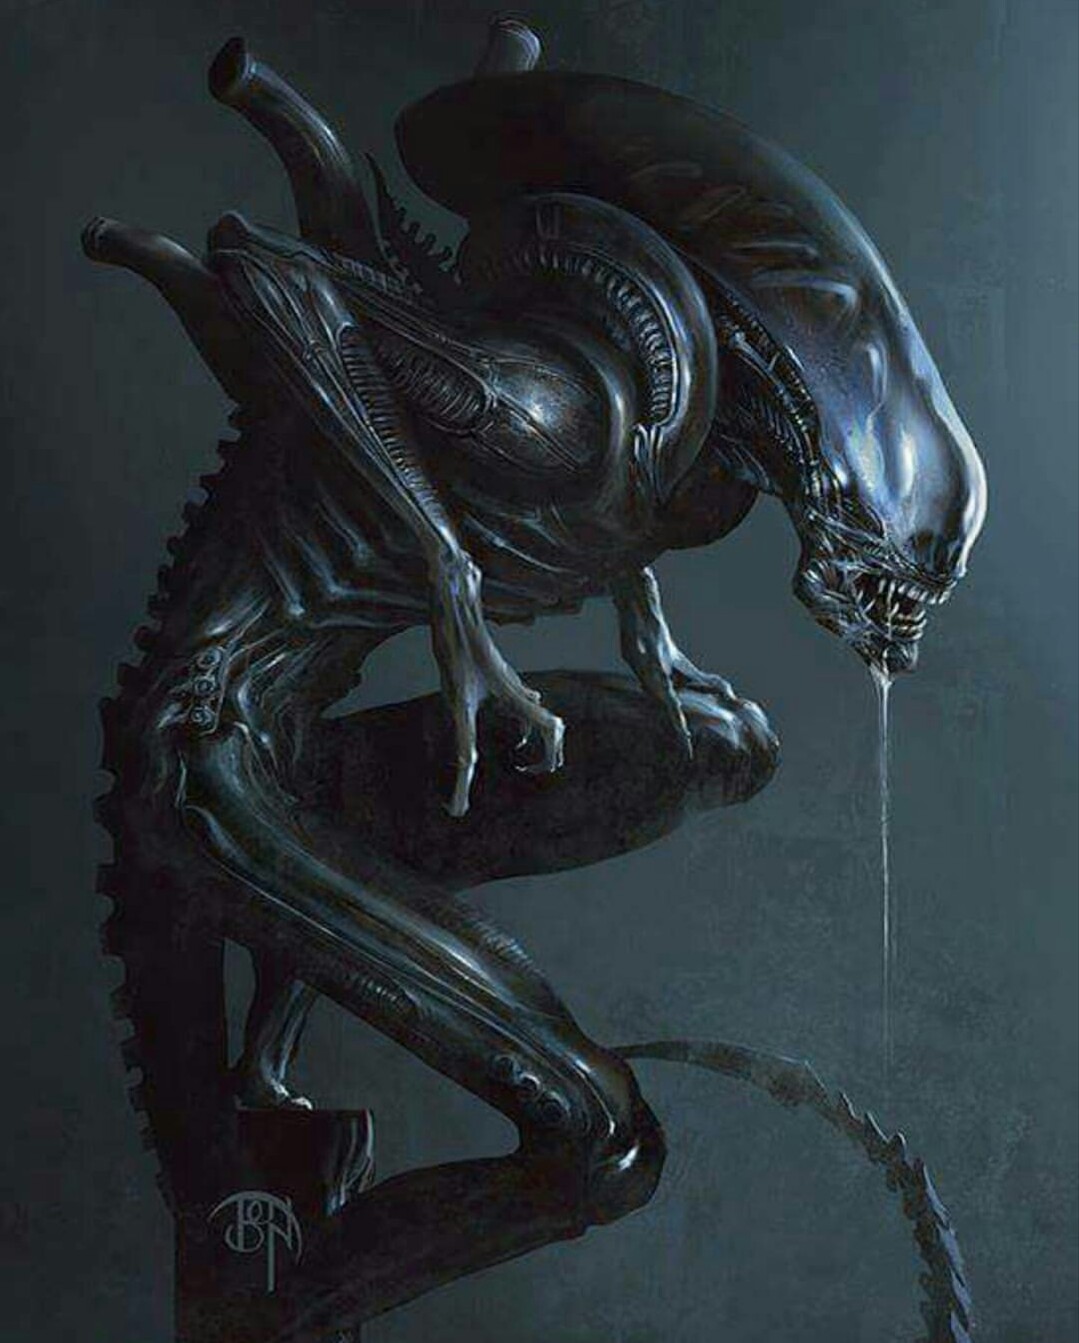  Alien Xenomorph  by Benny Kusnoto Alien  Fan Art Image Gallery